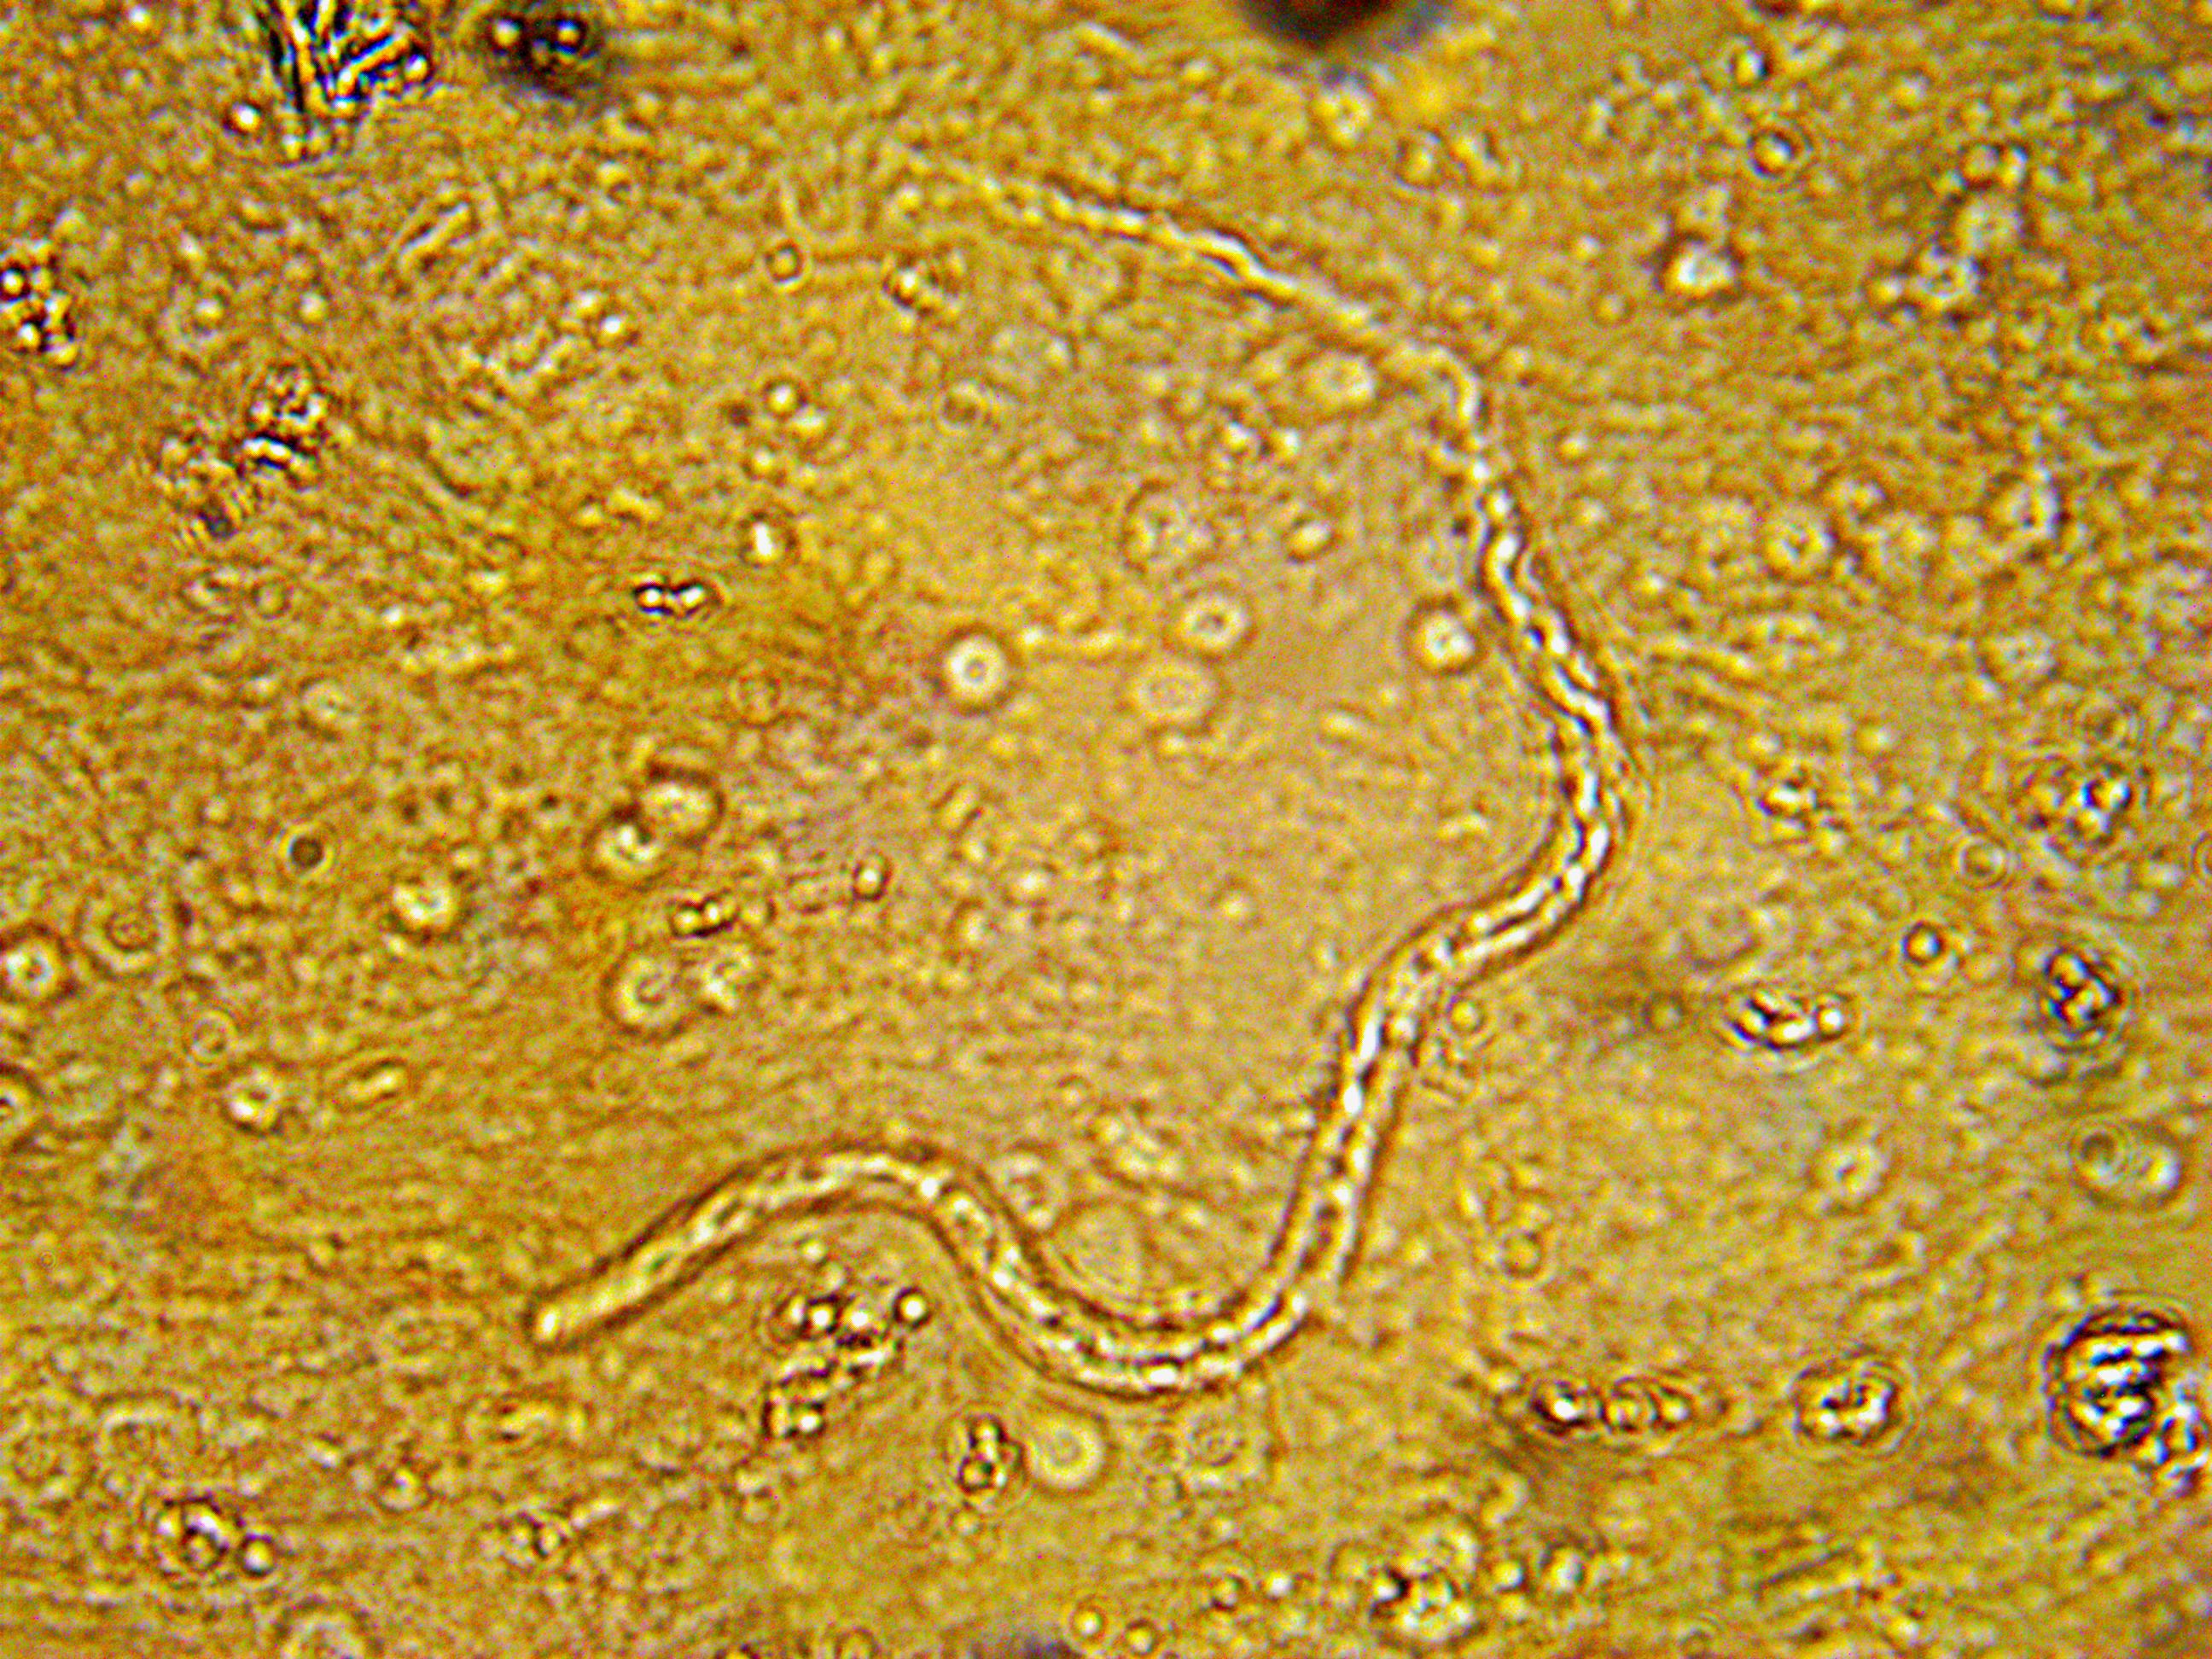 Микрофилярия среди разрушенных форменных элементов крови (фото О.В. Бяковой)